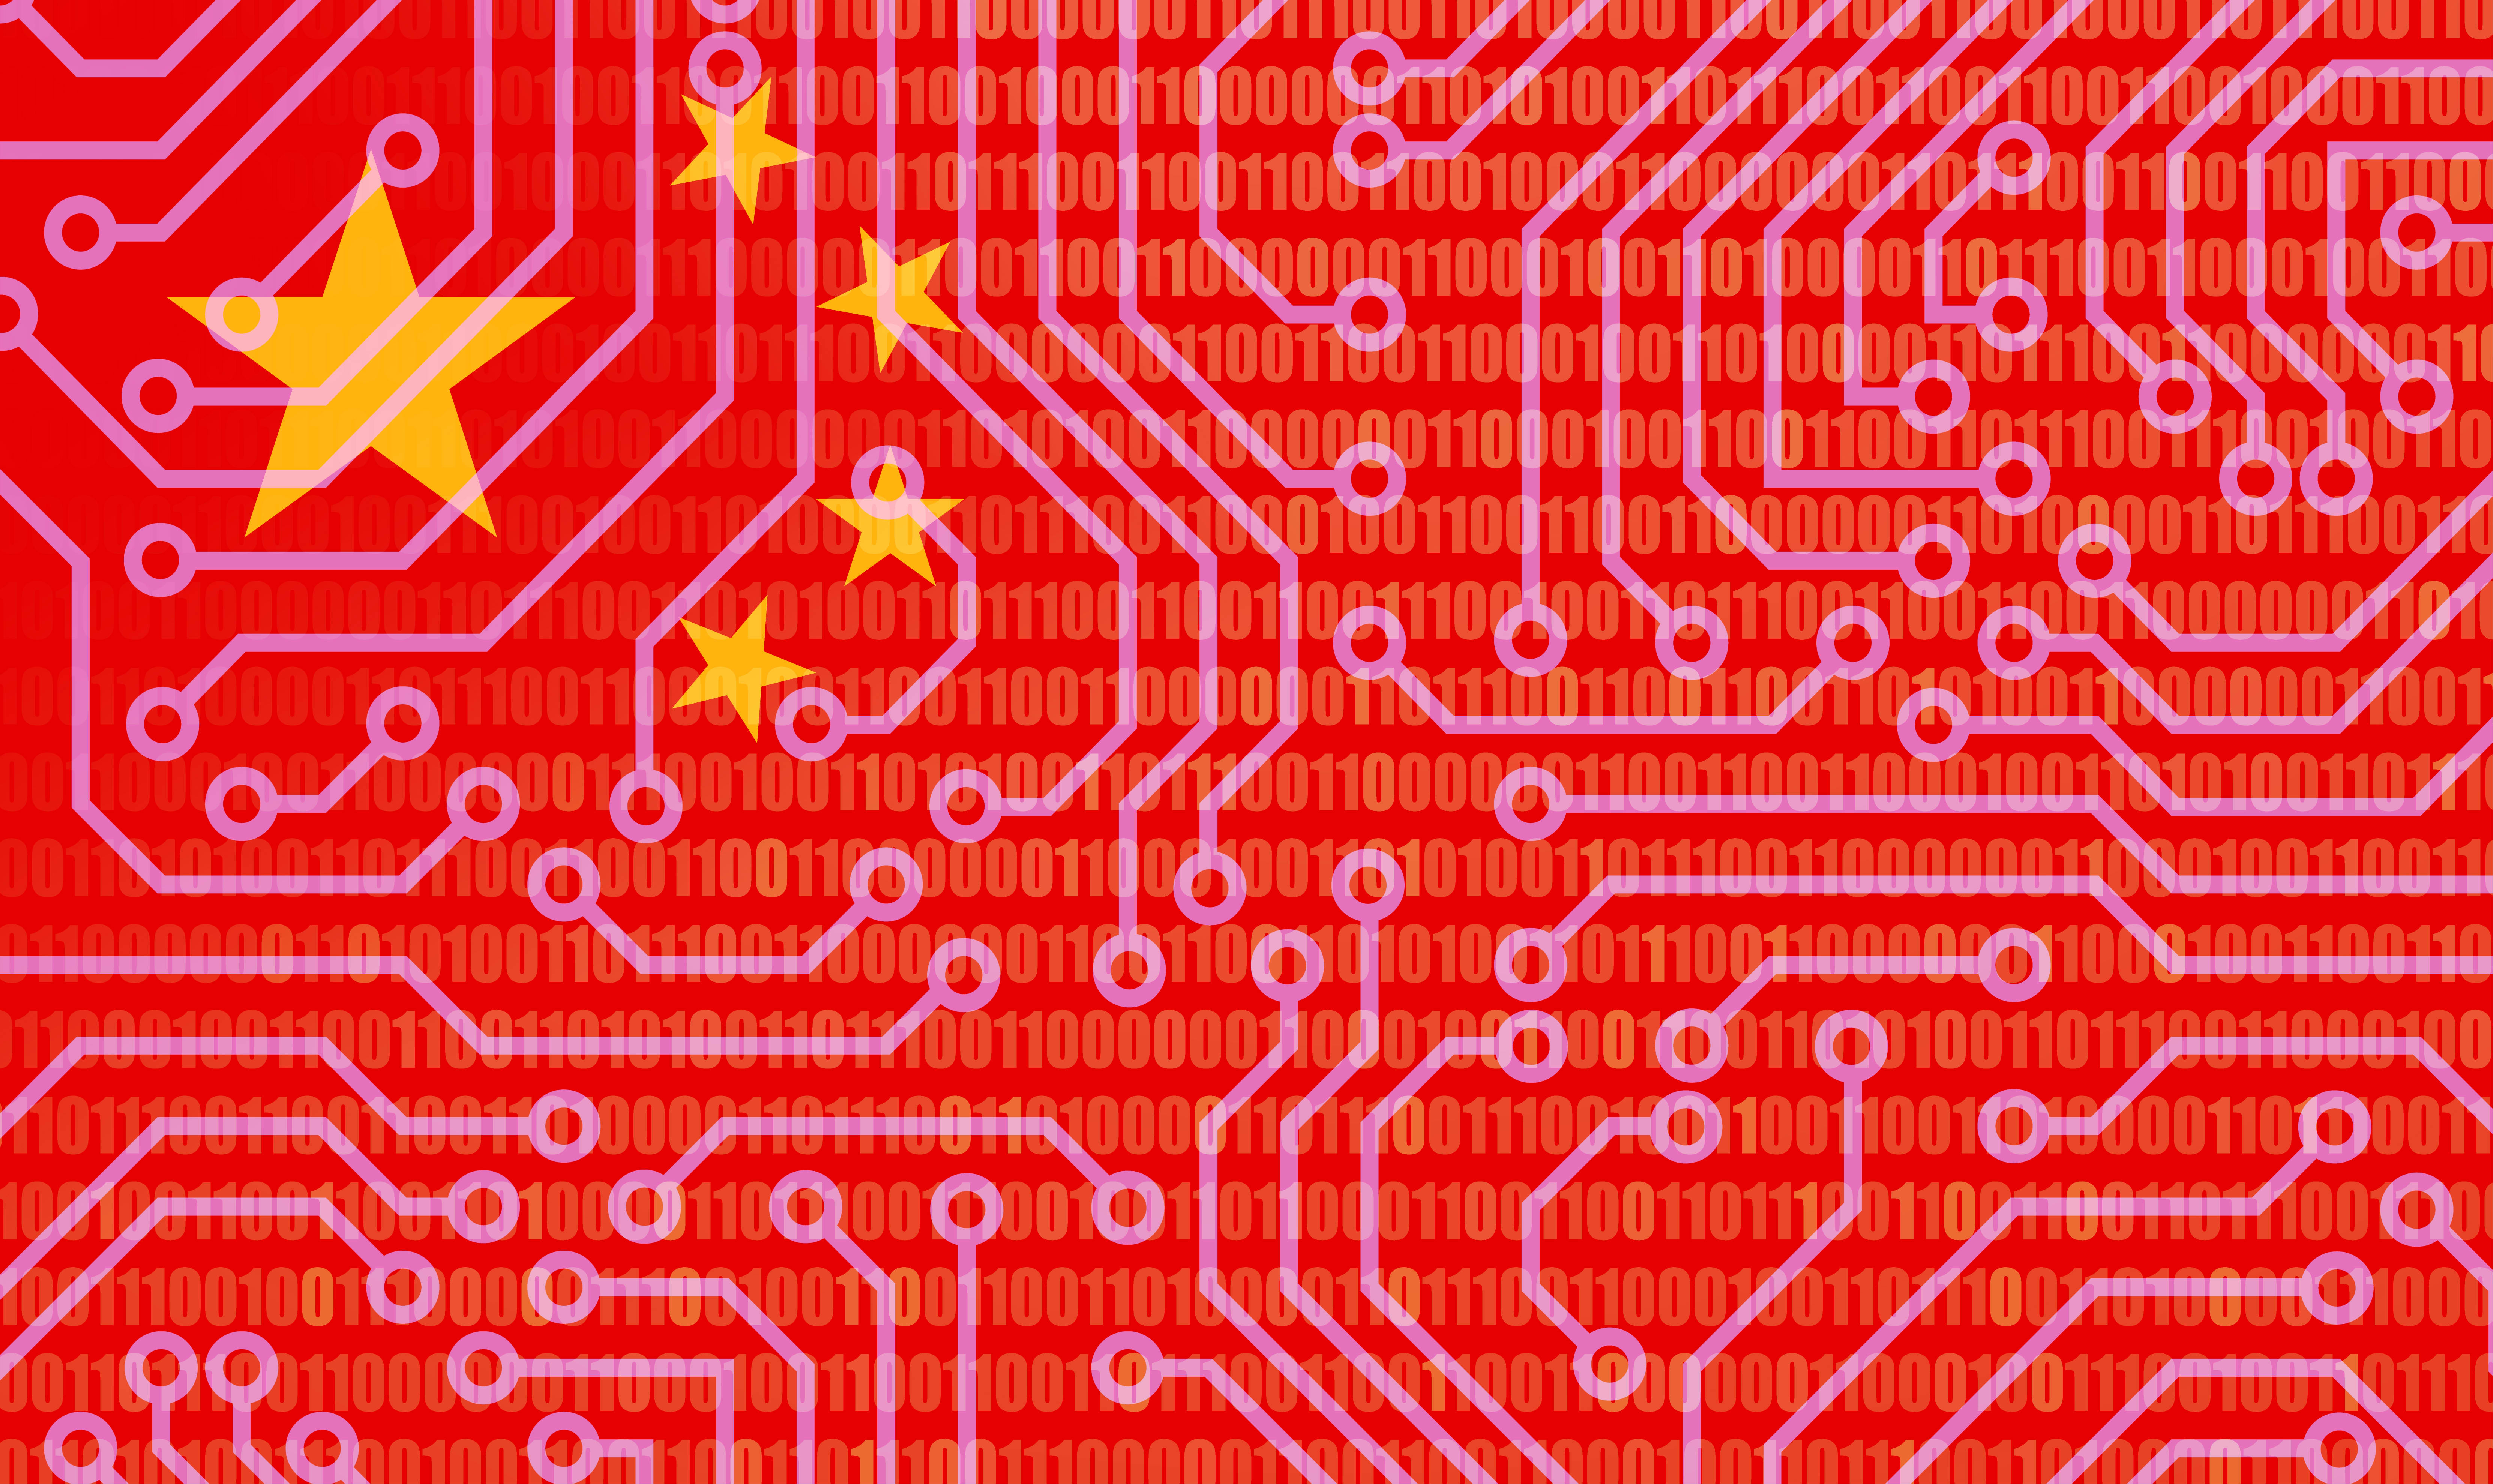 Los gigantes tecnológicos chinos Alibaba y Tencent han invertido en la empresa Zhipu, competidora de OpenAI.